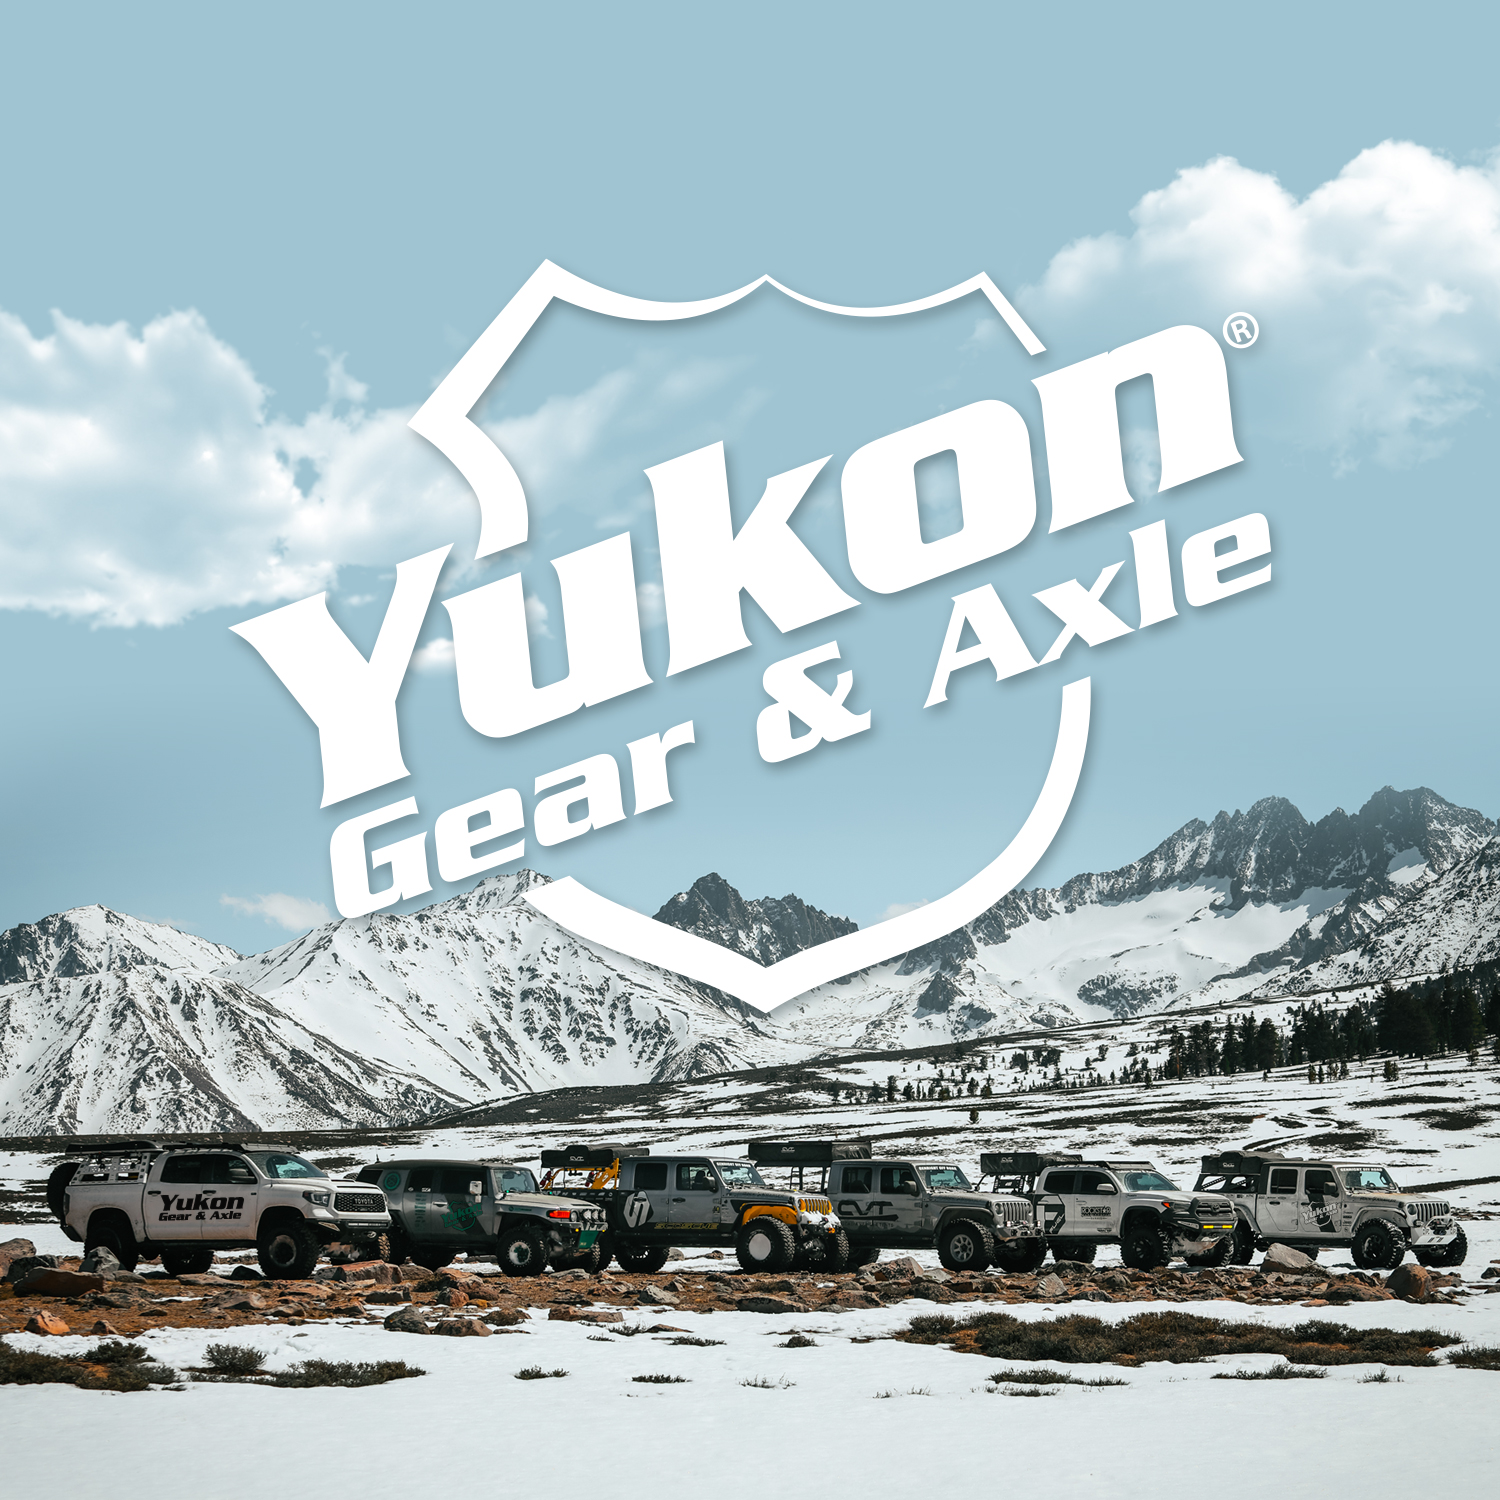 Yukon standard open spider gear kit for '96 and older 8.25" Chrysler, 27 spline 